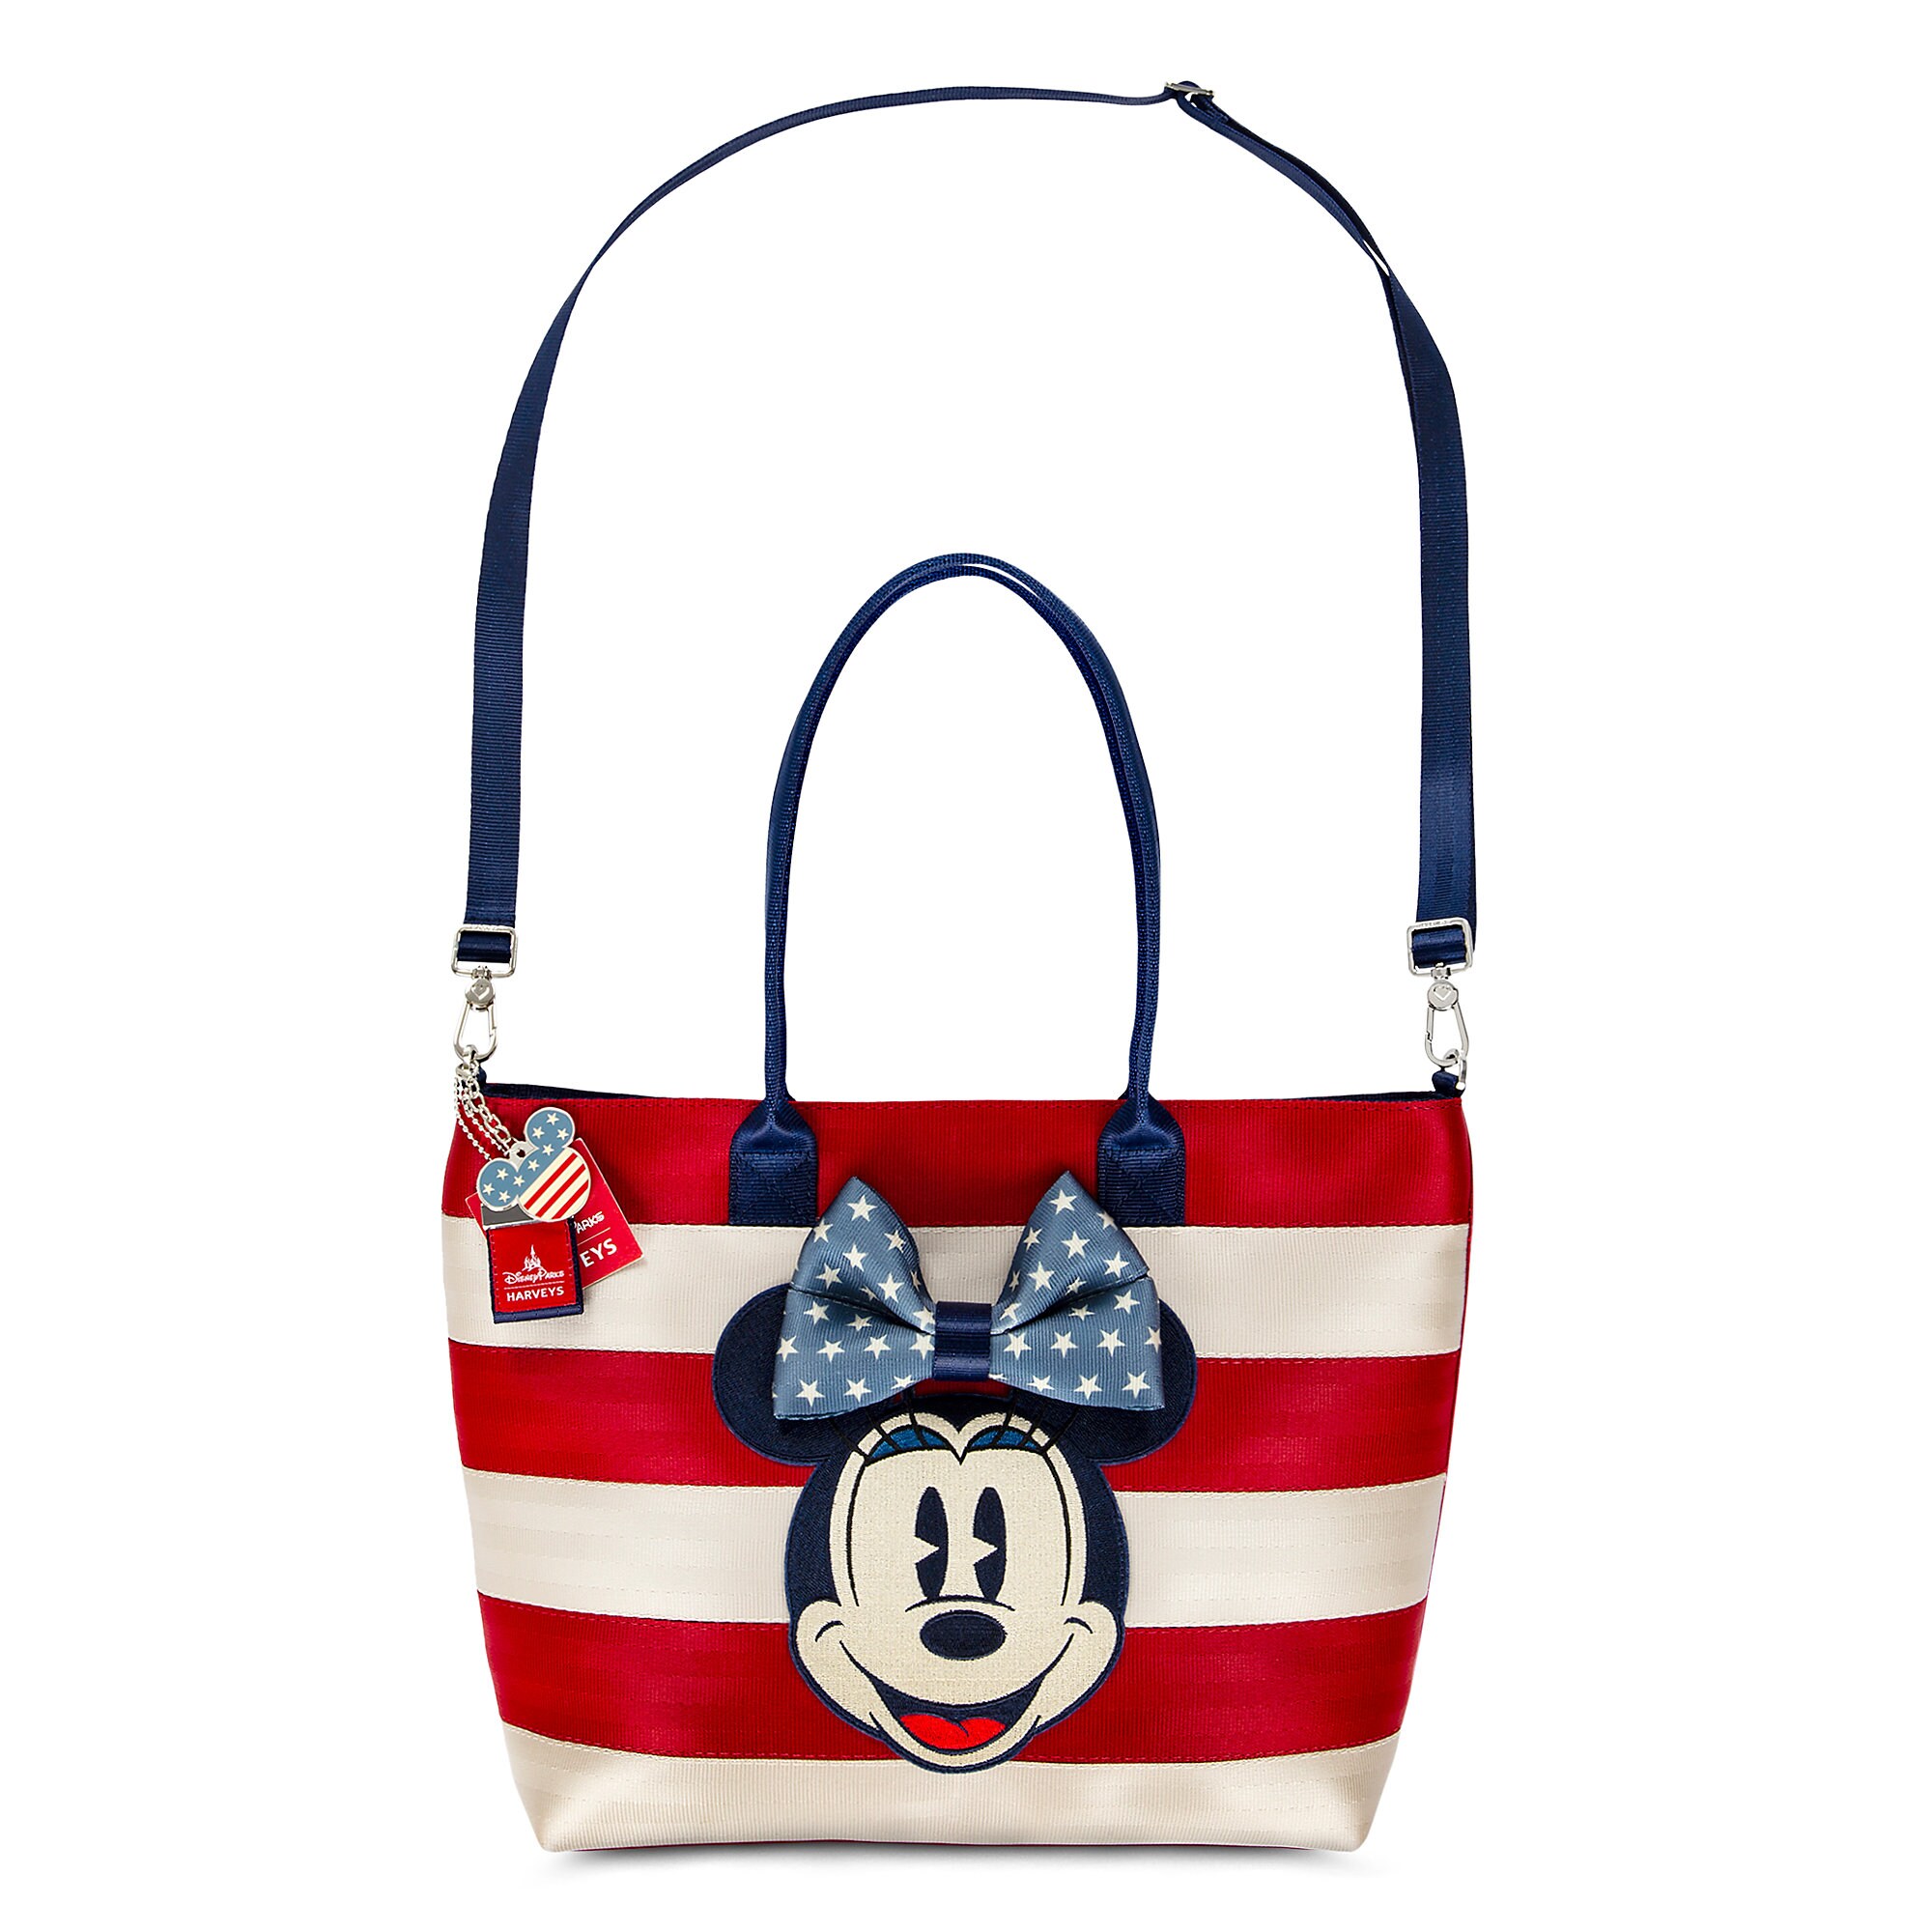 Mickey and Minnie Mouse Americana Streamline Tote by Harveys